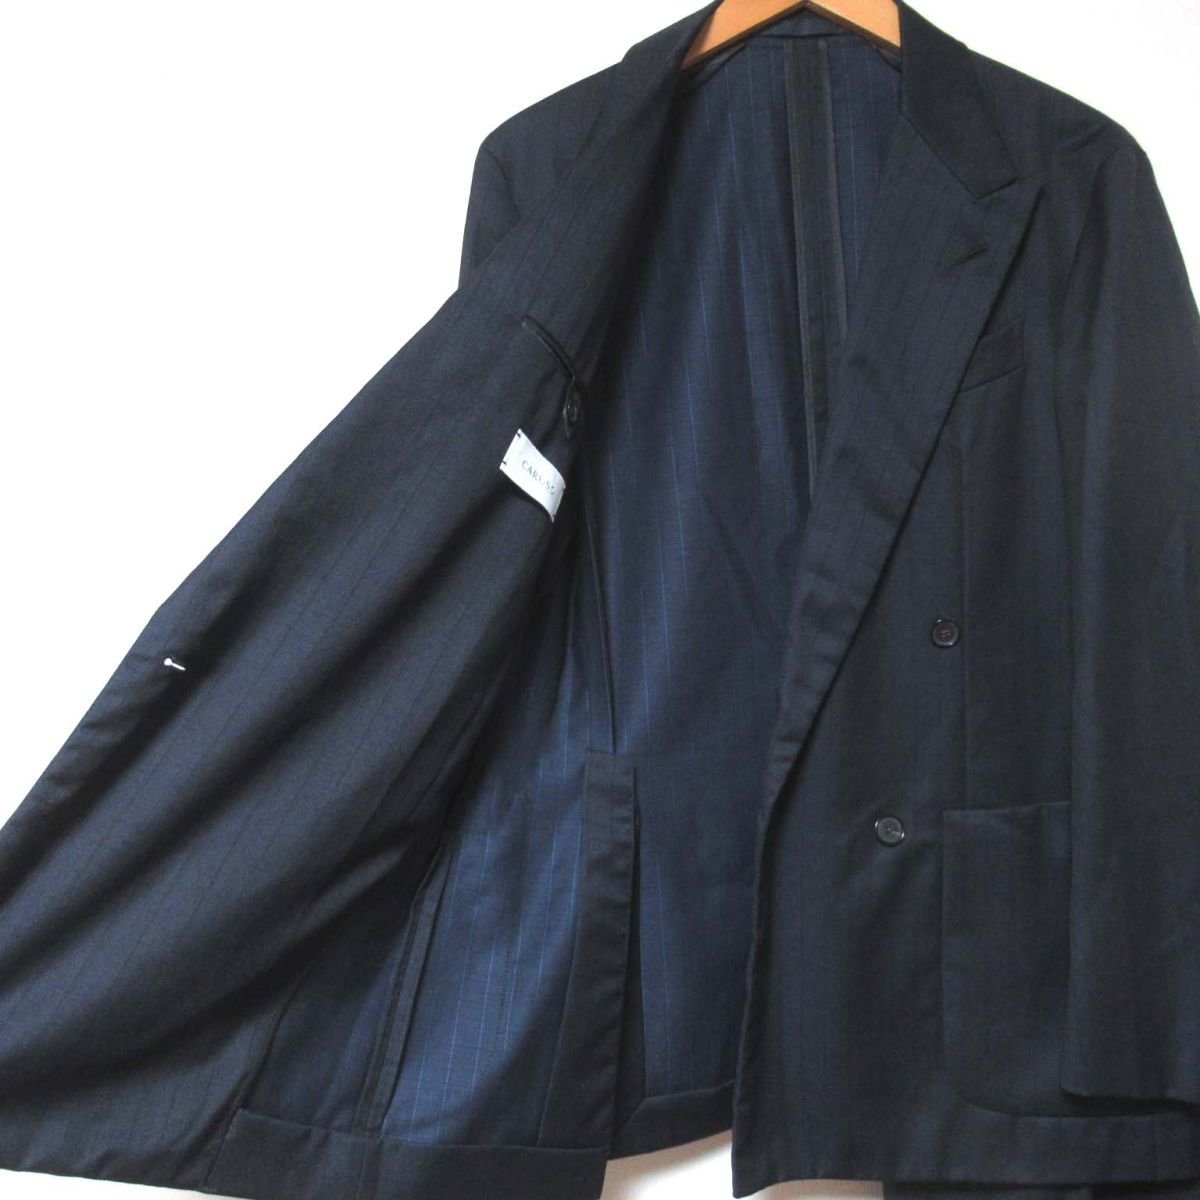  прекрасный товар CARUSOka Roo zobutterfly бабочка в тонкую полоску рисунок tailored jacket + слаксы брючный костюм выставить 46R темно-синий 